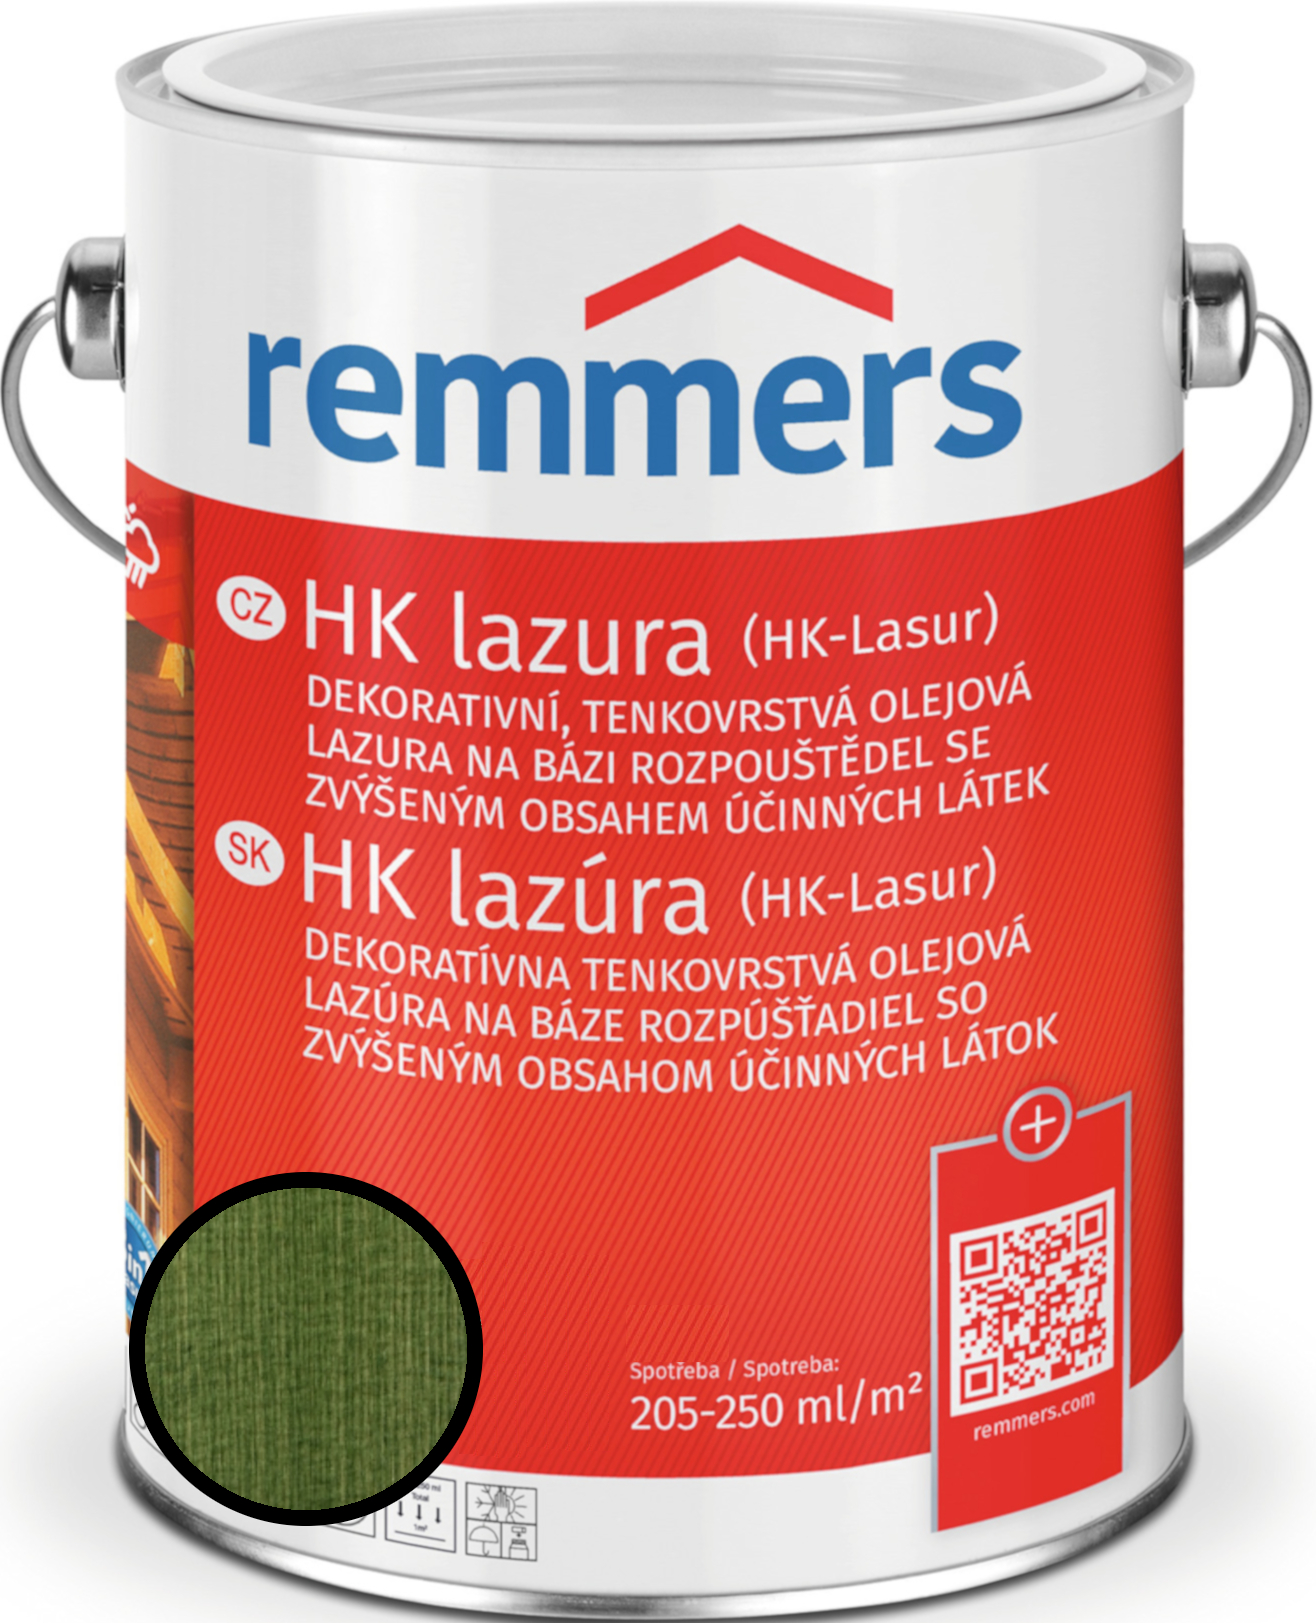 Lazura tenkovrstvá Remmers HK lazura tannengrün, 2,5 l